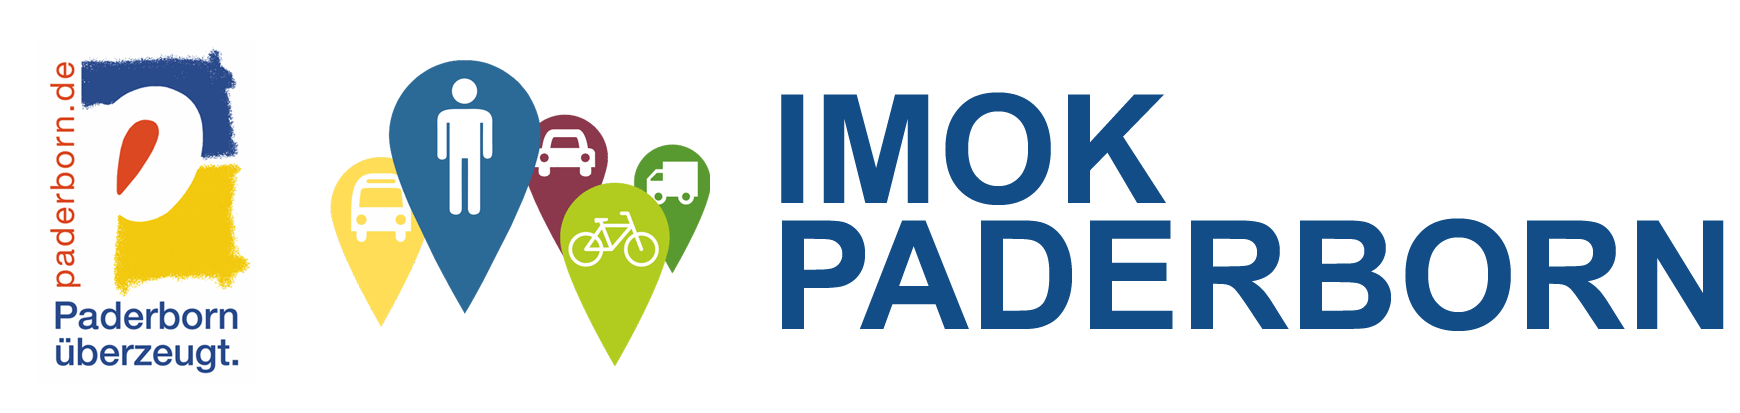 Logo Paderborn überzeugt sowie Logo IMOK Paderborn